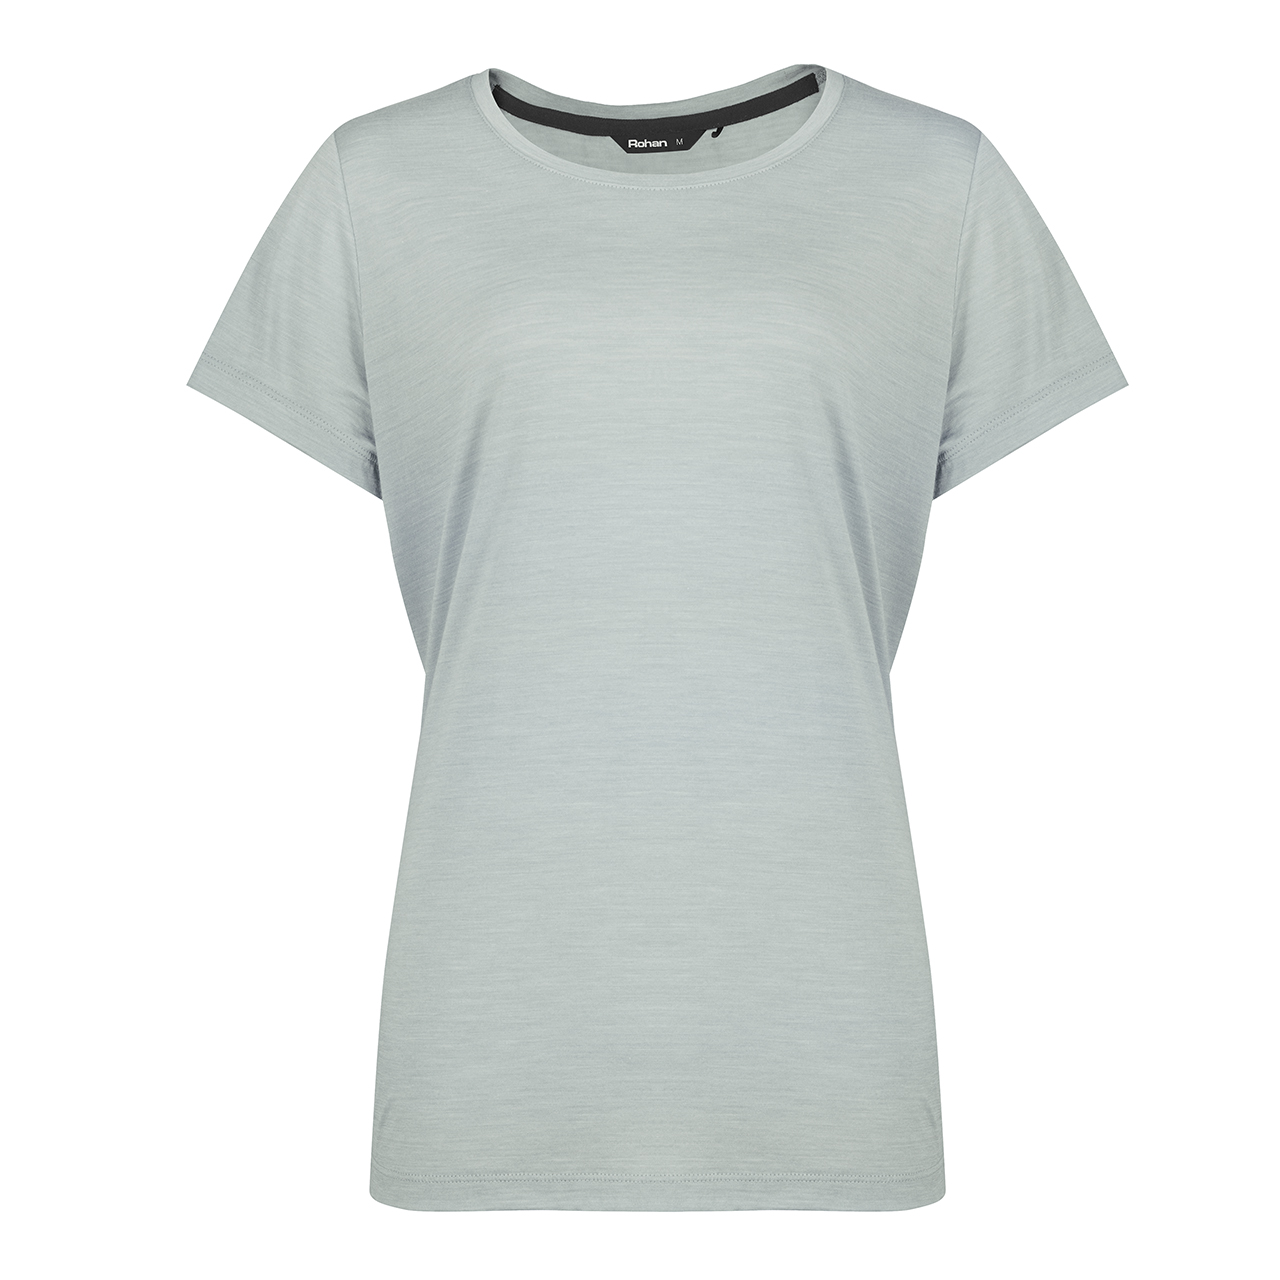 Women’s Merino Cool Short Sleeve T-Shirt